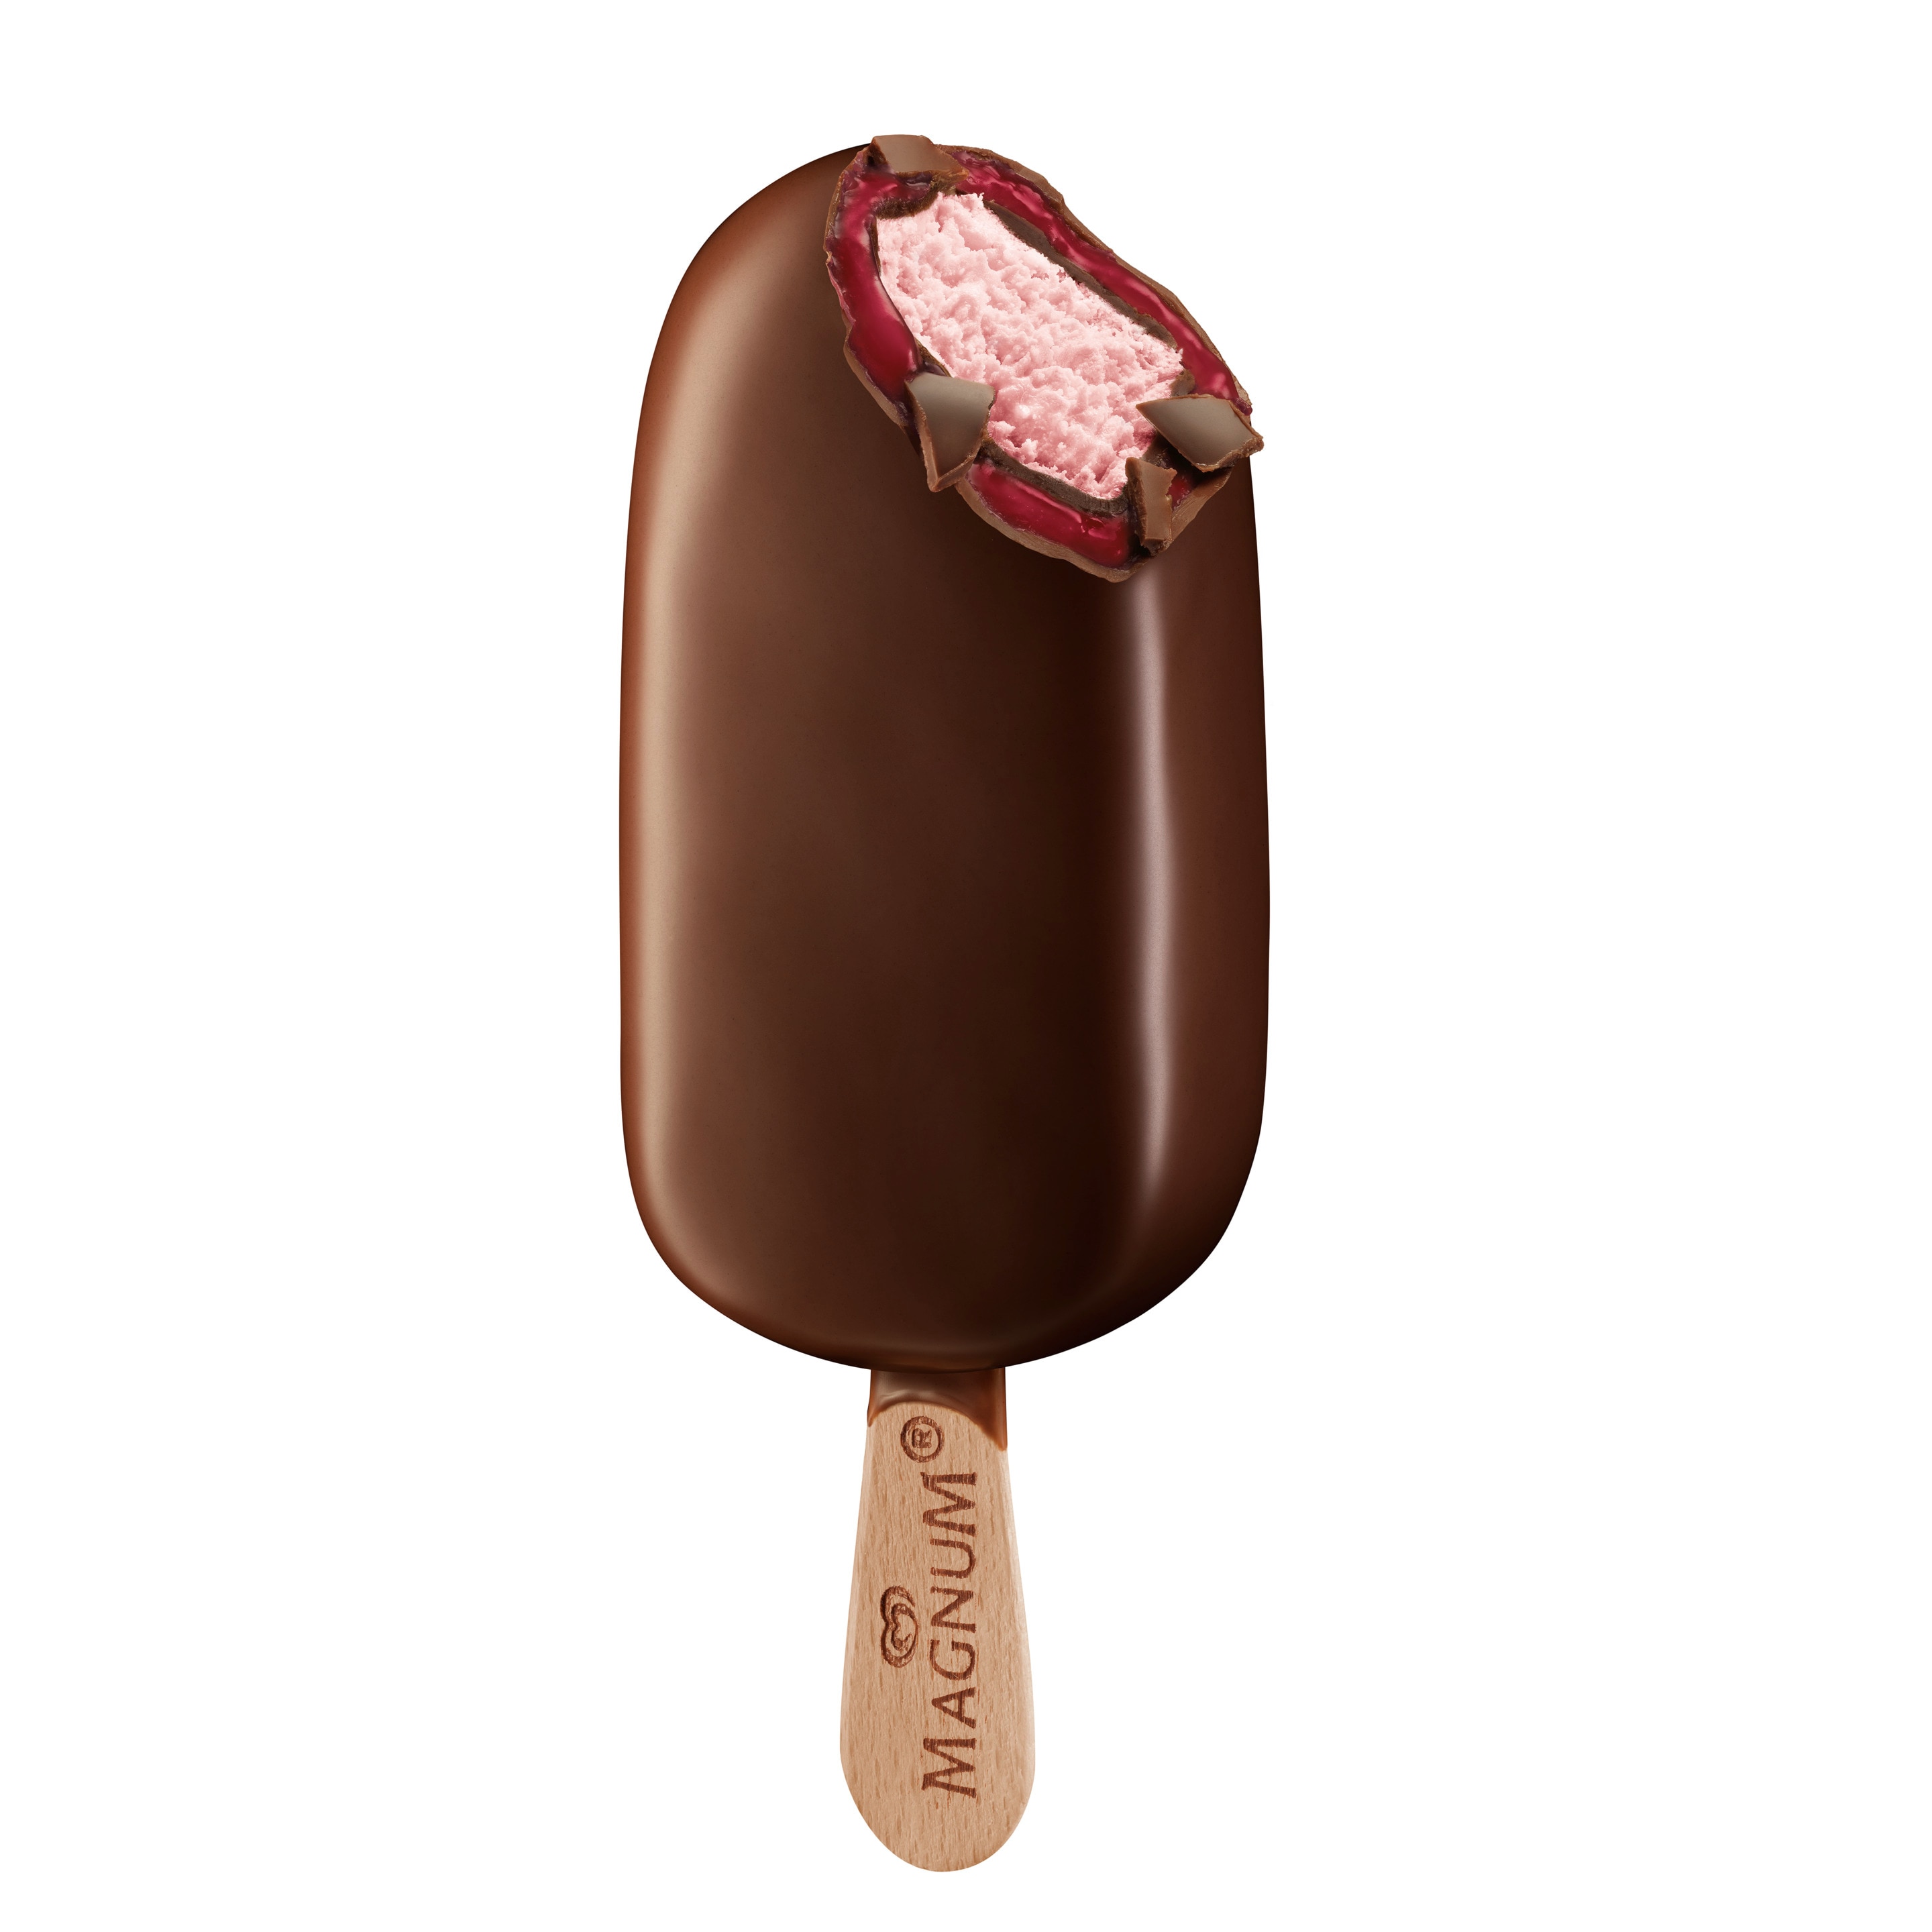 Magnum ice-cream double-raspberry